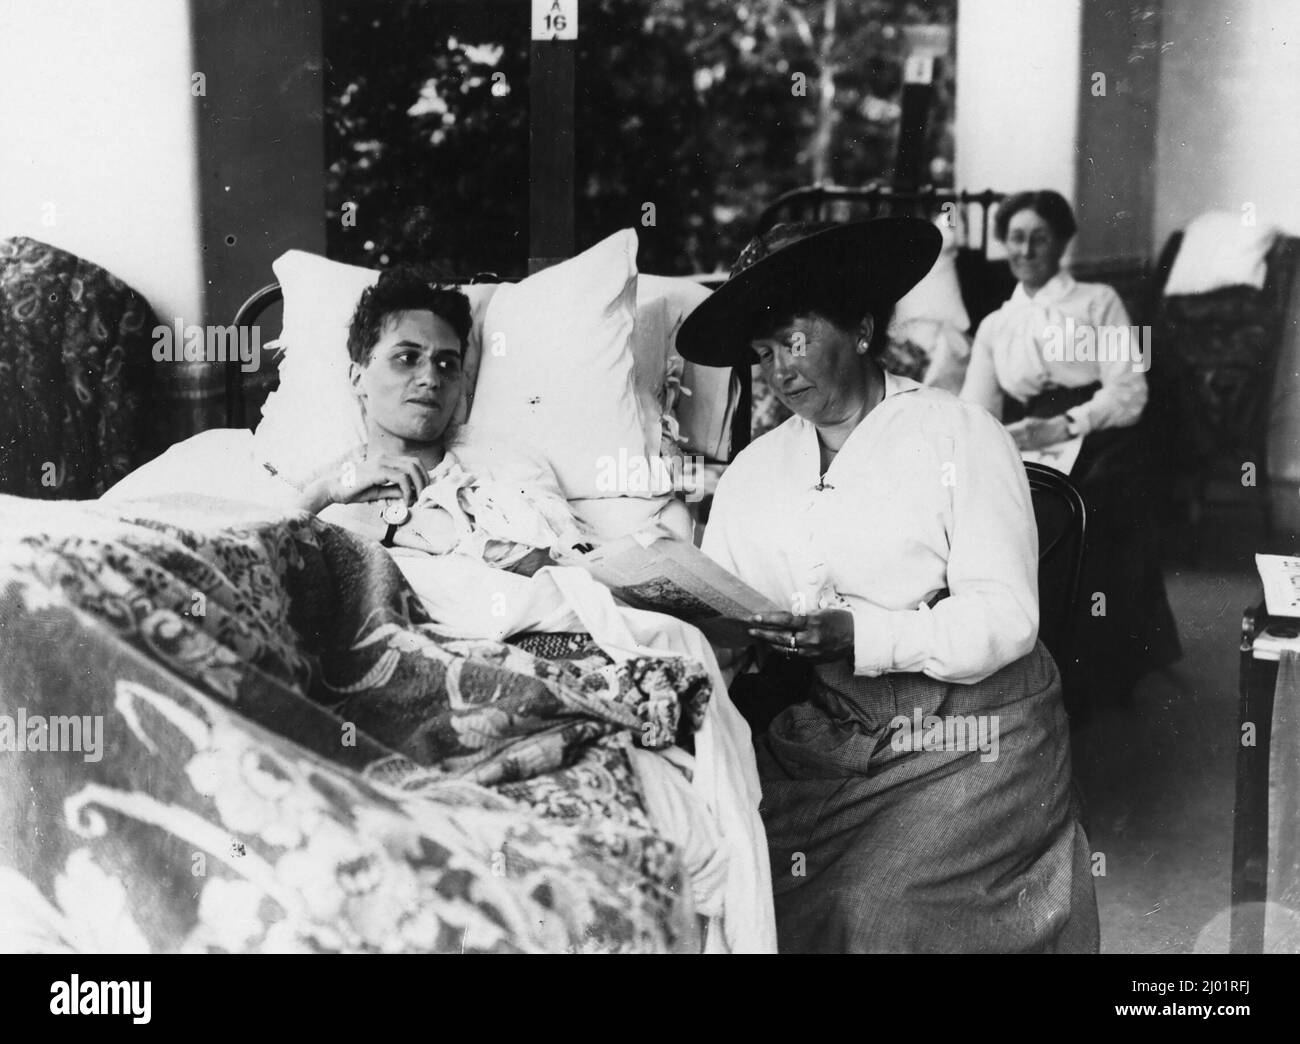 Verwundete Soldaten liegen in einem Krankenhausbett. Nach der Originalunterschrift ist die Frau, die neben ihm sitzt, seine Mutter. Sie liest, möglicherweise laut, aus einer Zeitschrift. Direkt hinter ihnen sitzt eine andere Frau neben einem Bett. Stockfoto